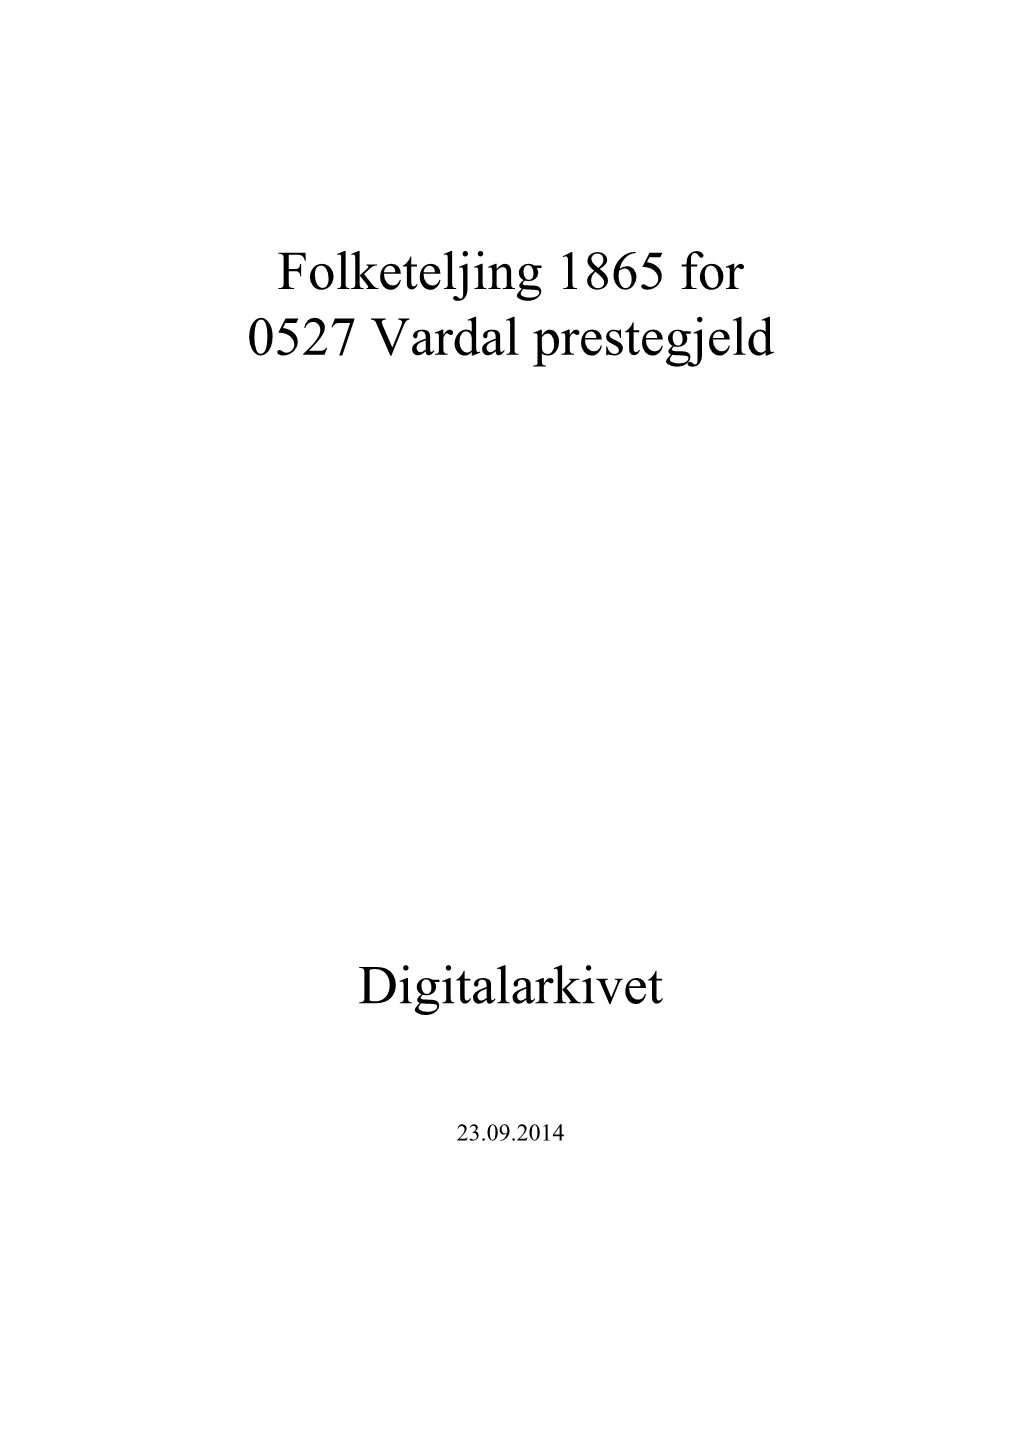 Folketeljing 1865 for 0527 Vardal Prestegjeld Digitalarkivet